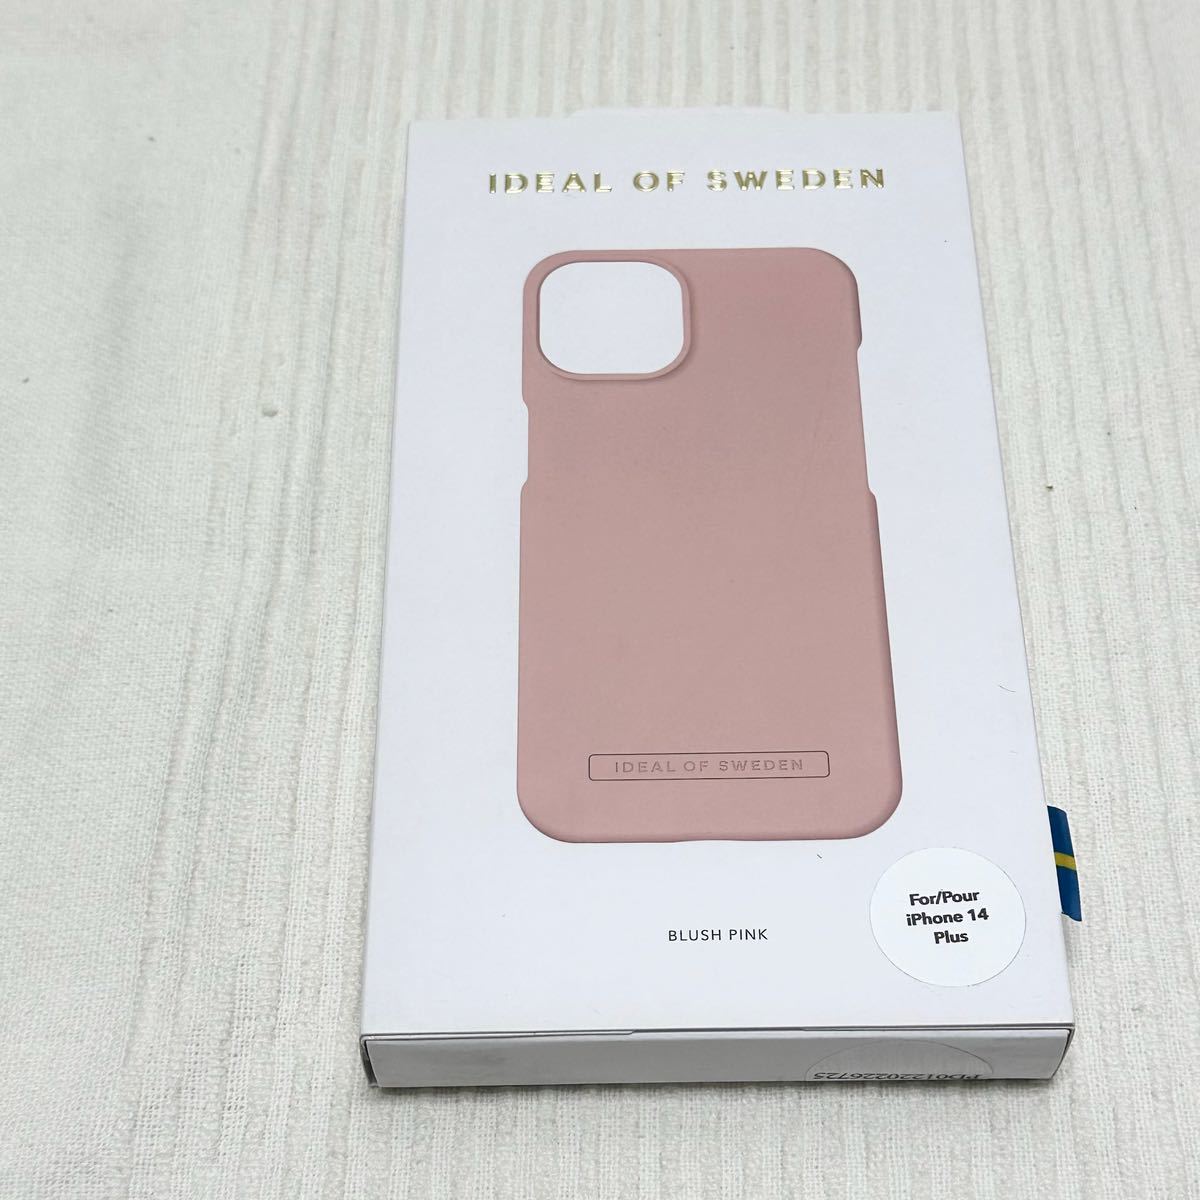 【HY240121-025】【未使用】 iPhone 14 Plus アイディール オブ スウェーデン BLUSH PINK ピンク アウトレット品_画像1